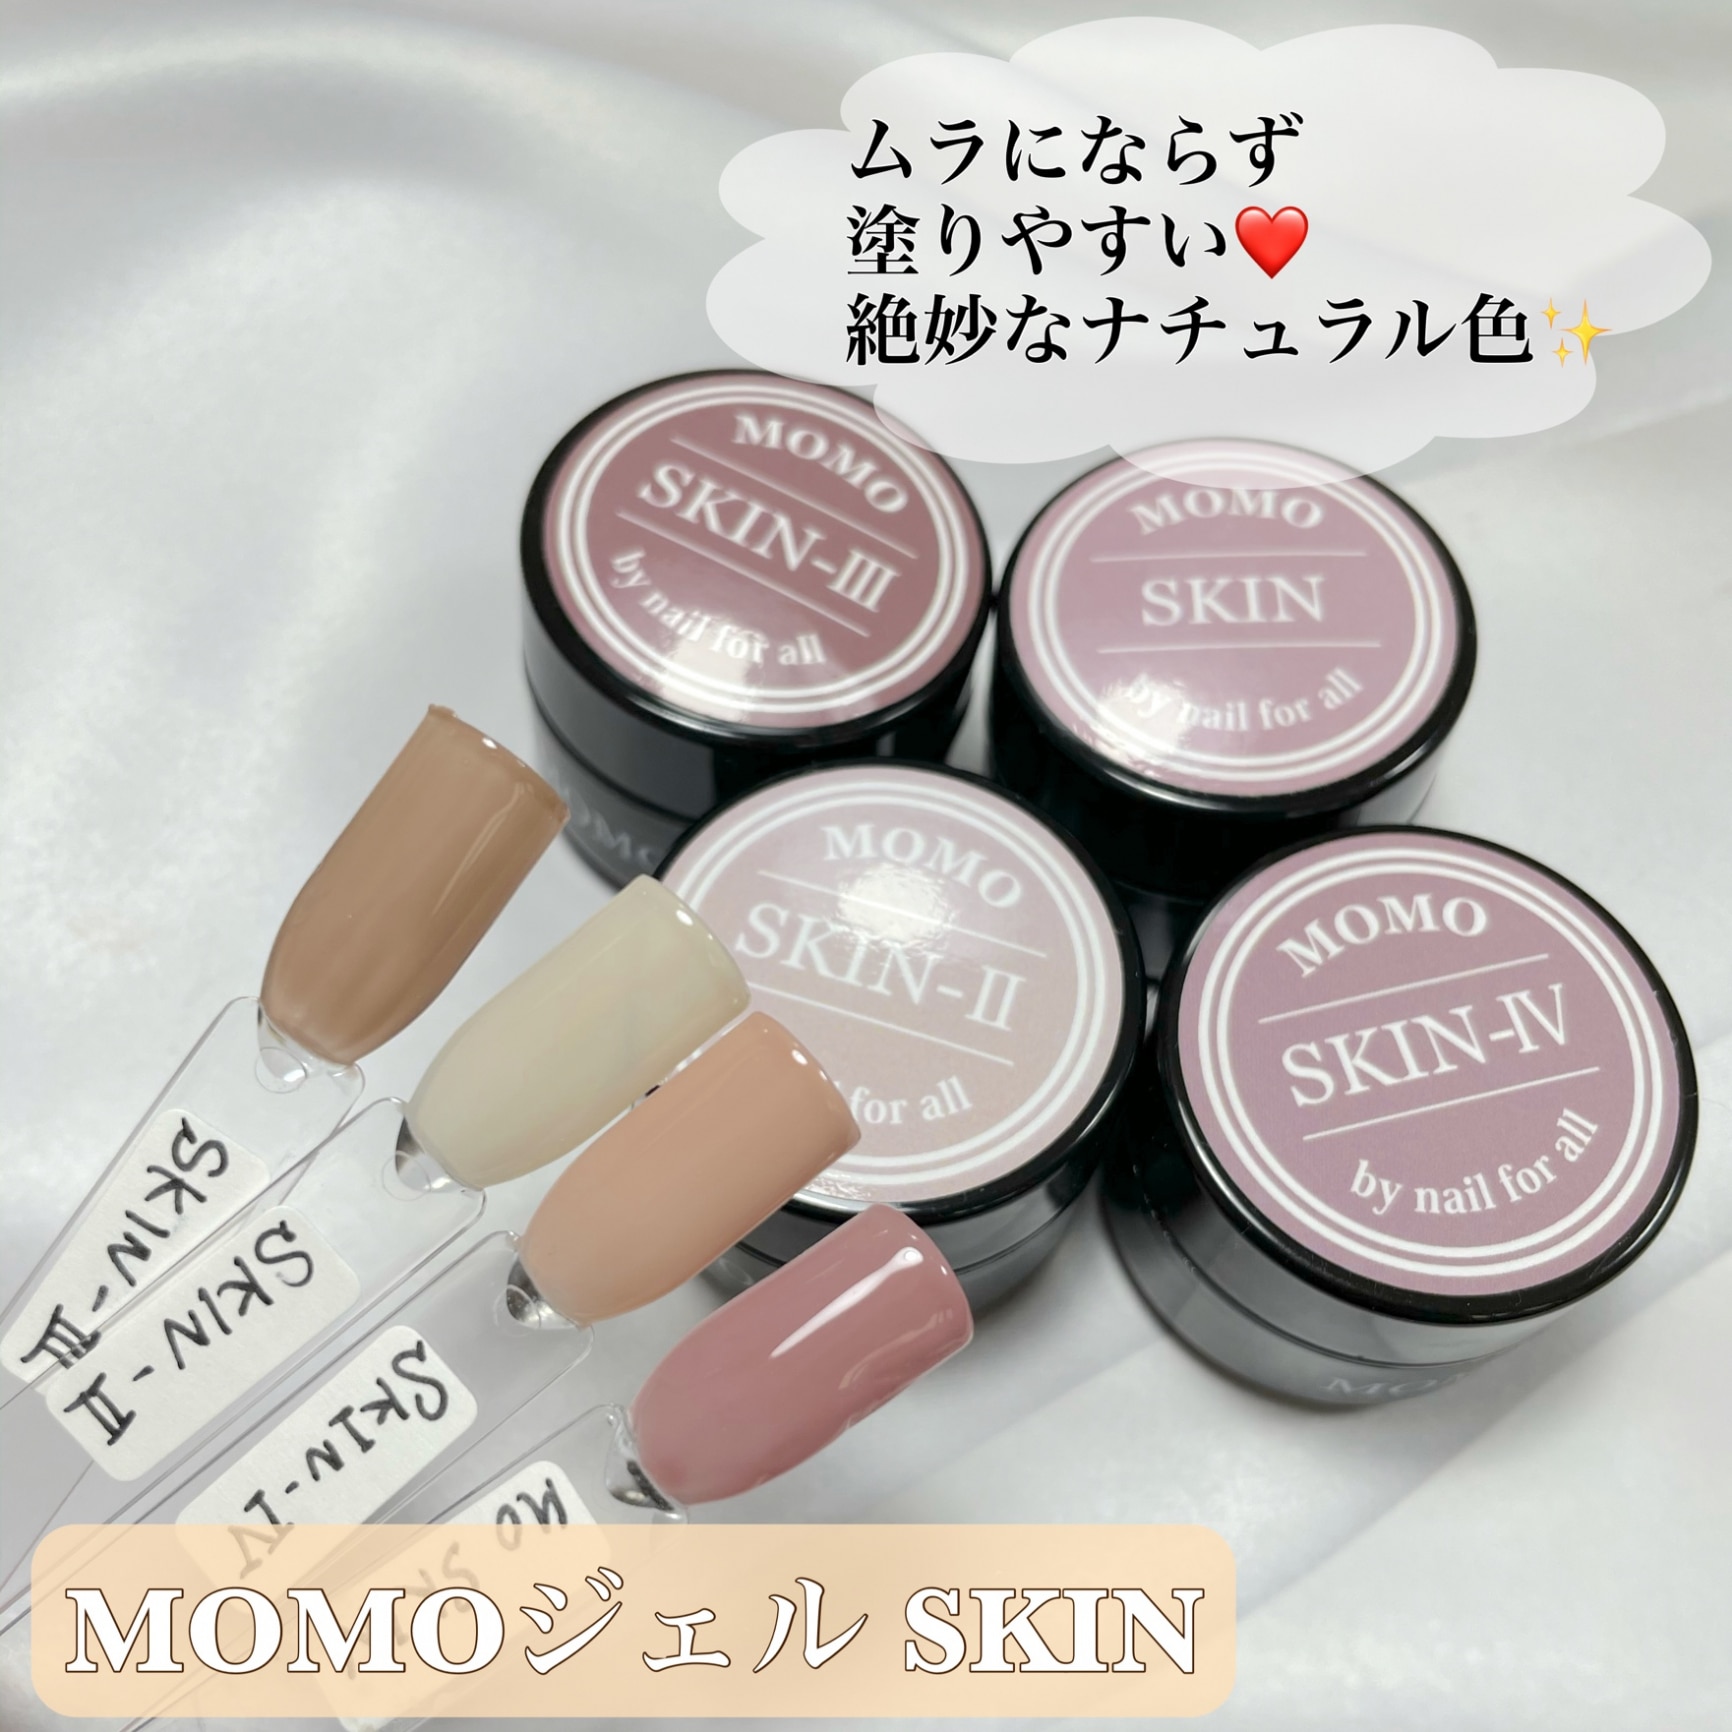 □ ジェルネイル カラー カラージェル SKIN-II MOMO by nail for all